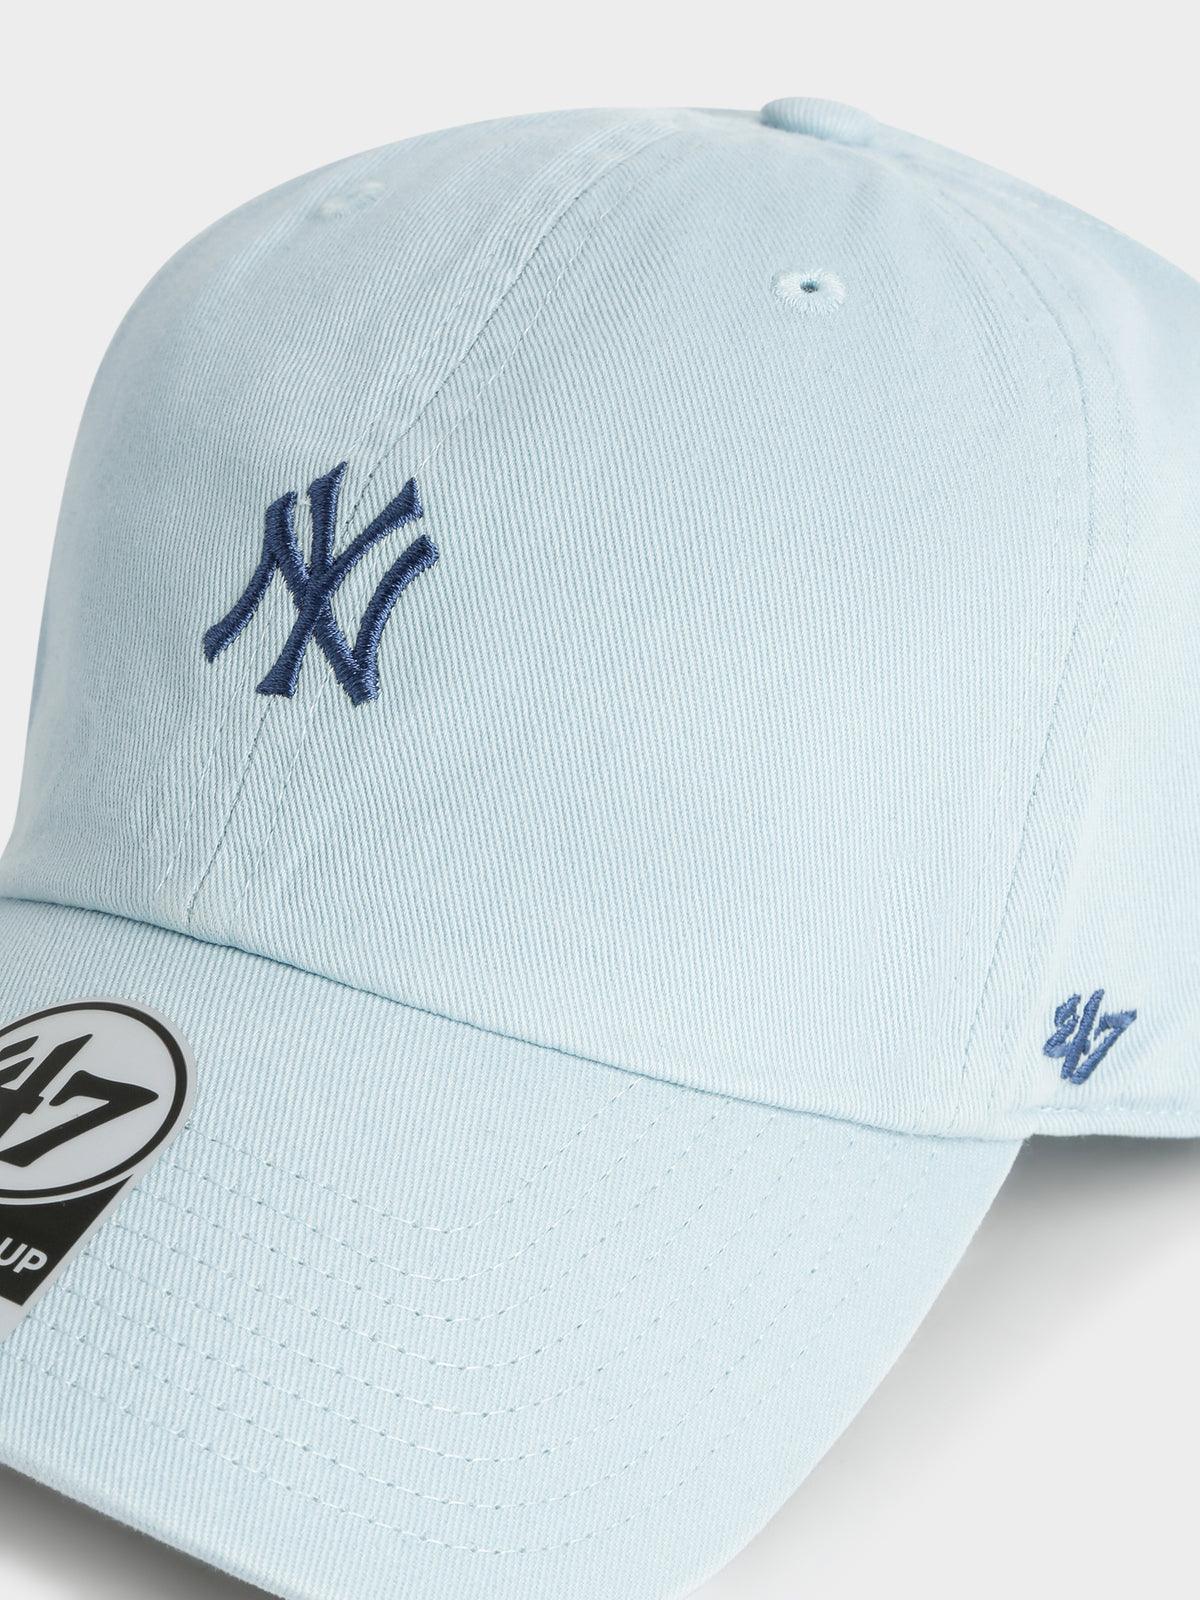 NY Yankees Baseball Cap in Baby Blue